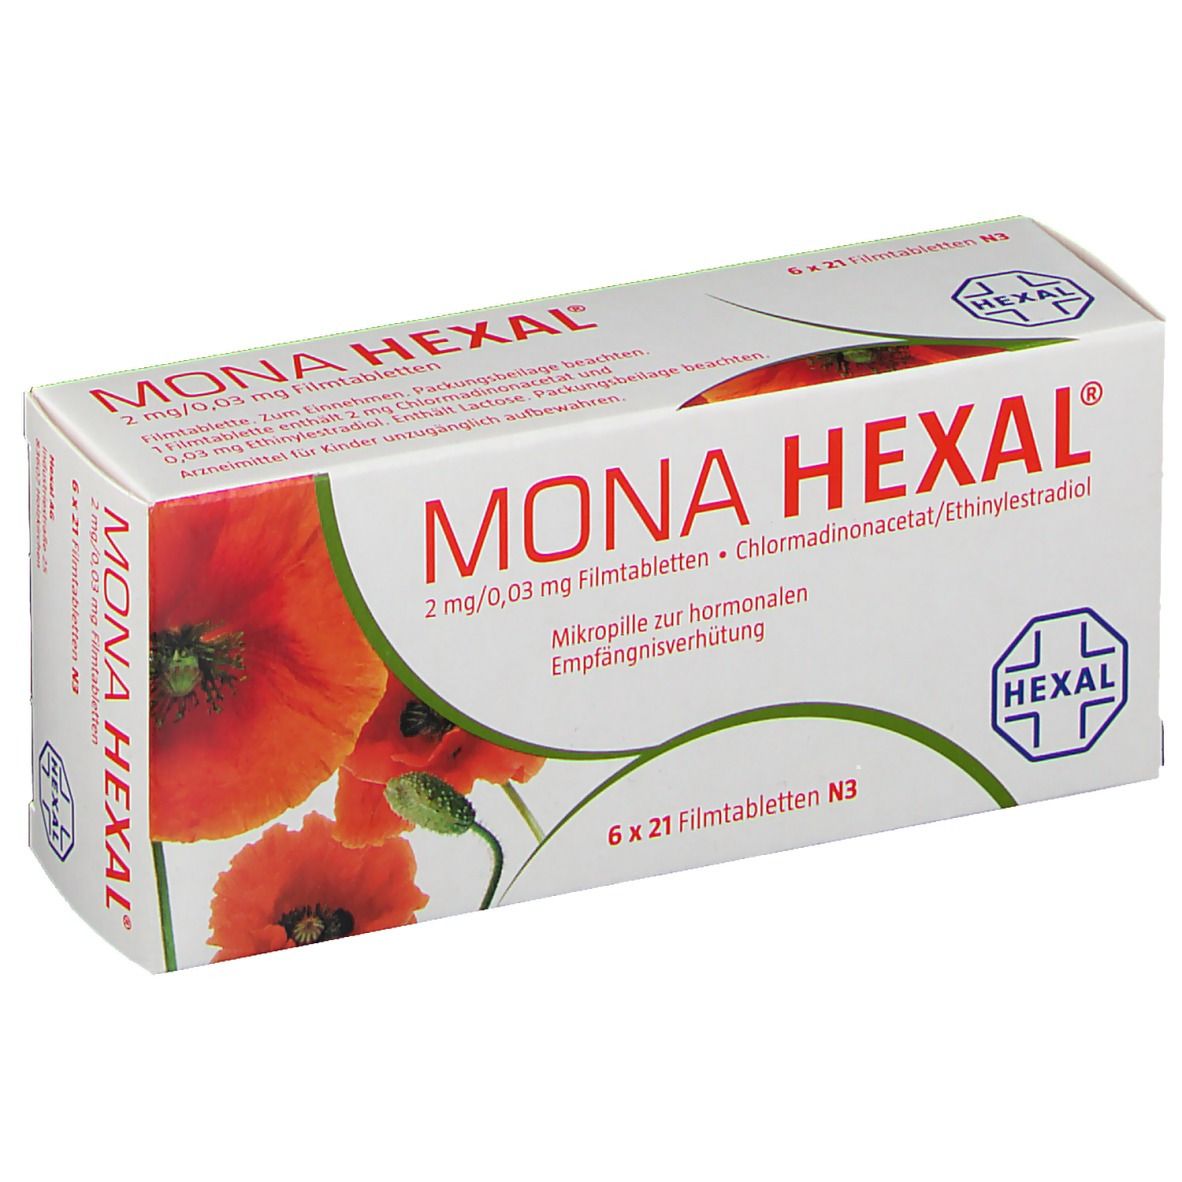 MONA HEXAL® 2 mg/ 0,03 mg